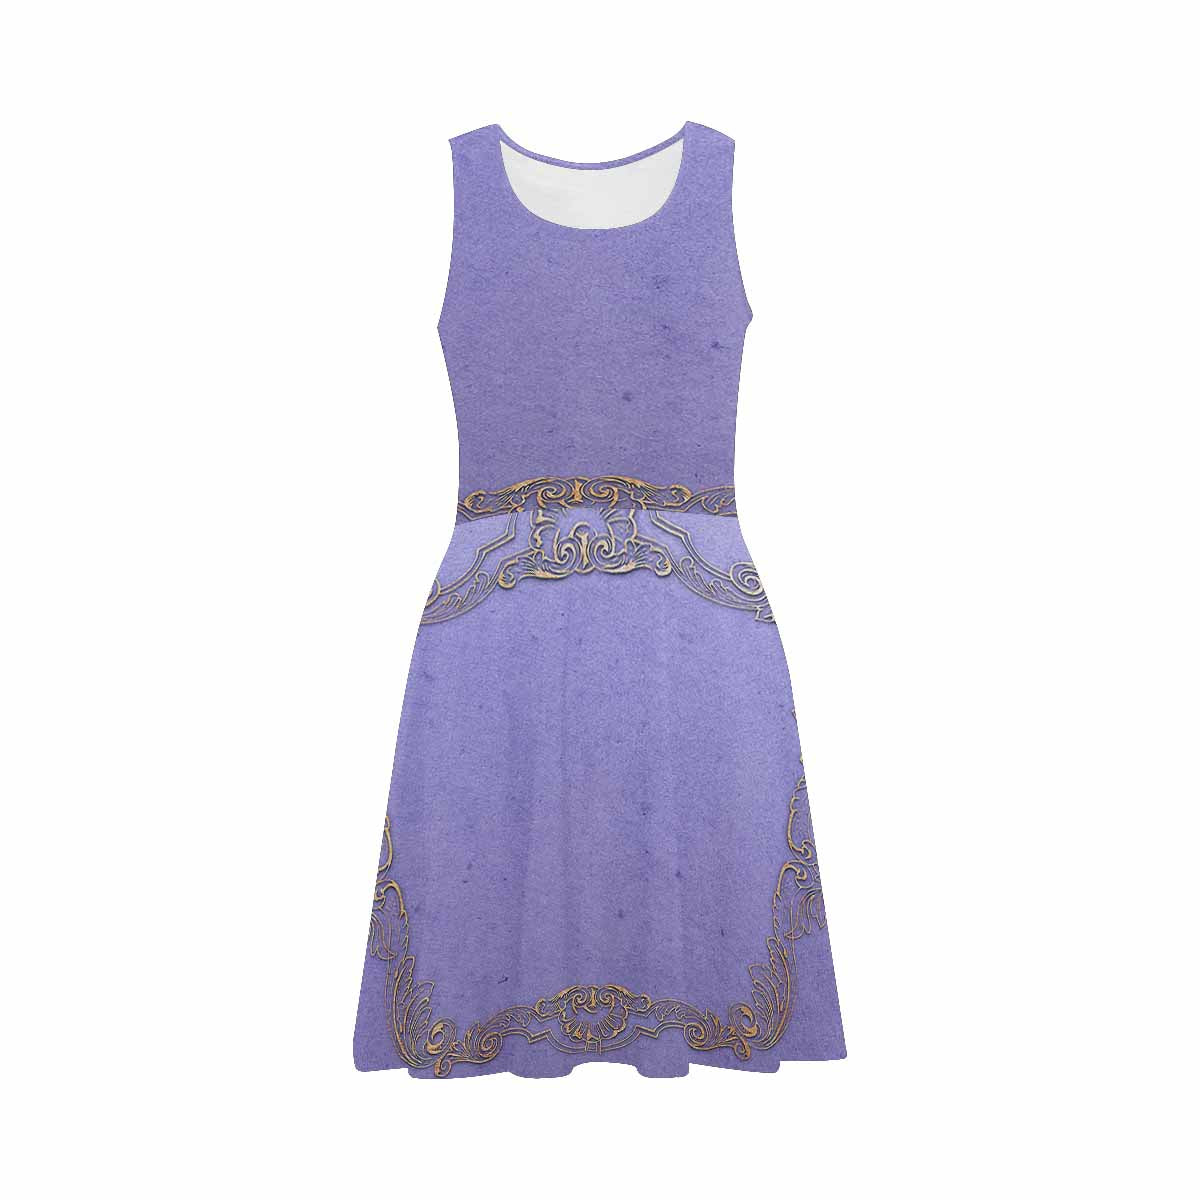 Antique General summer dress, MODEL 09534, design 45